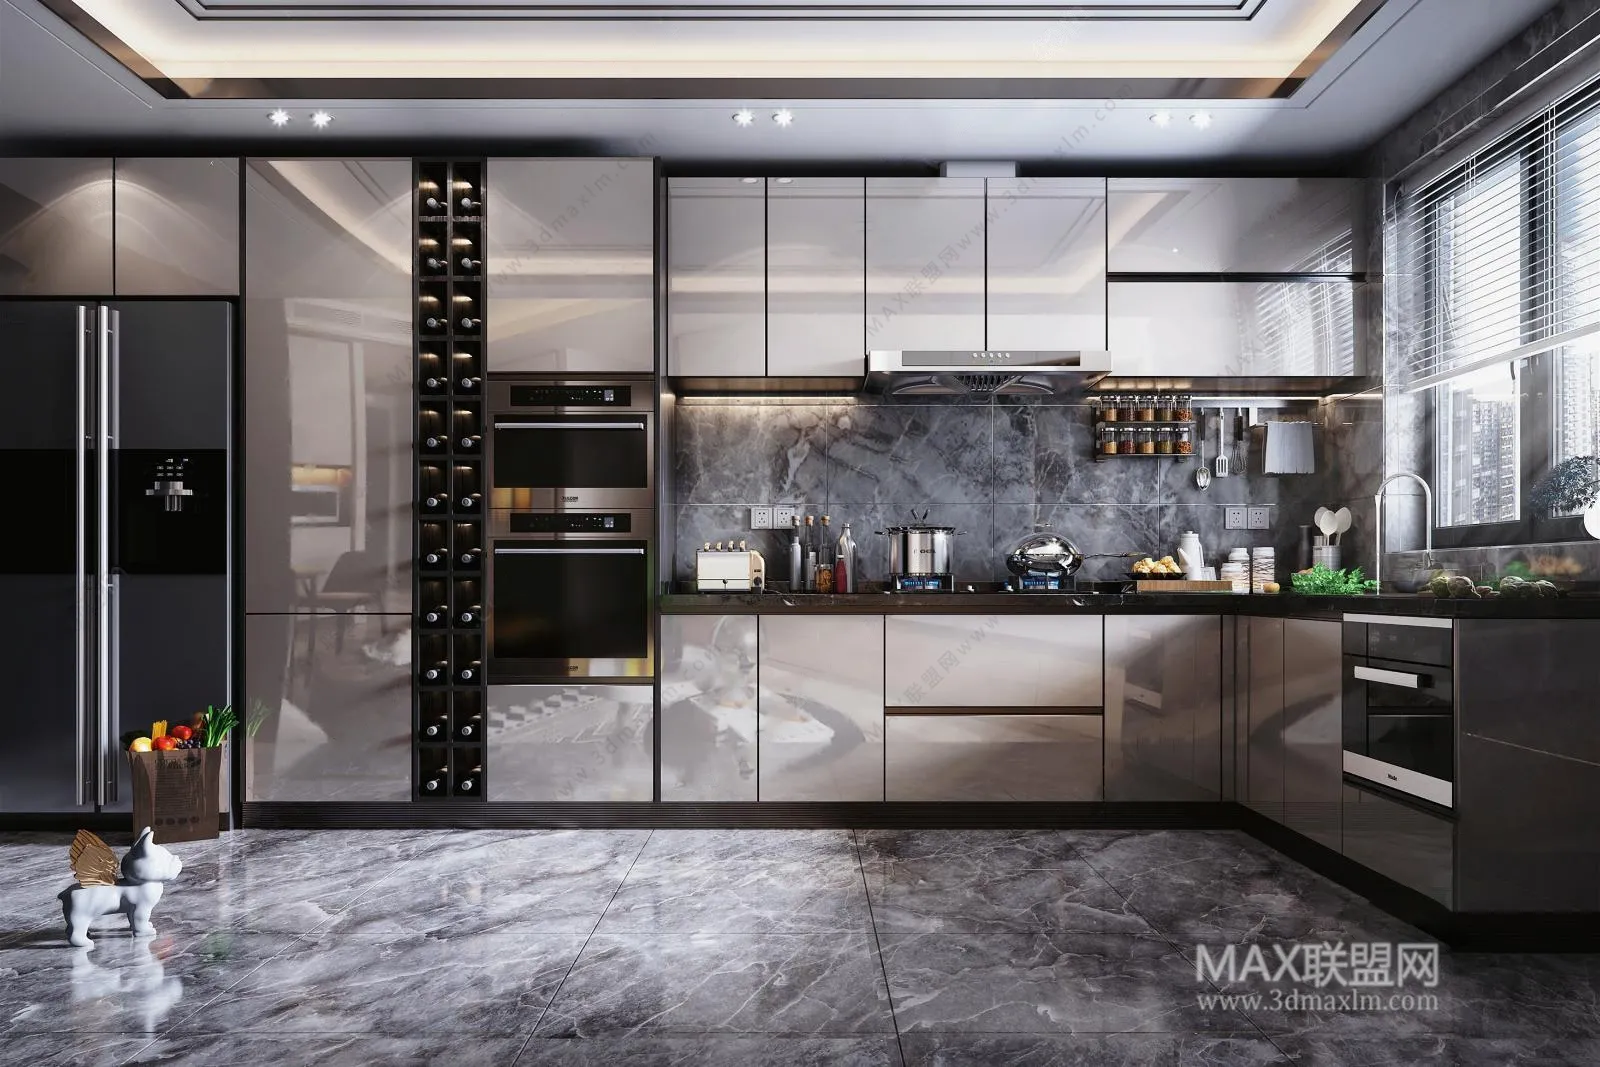 Kitchen – Interior Design – Modern Design – 001